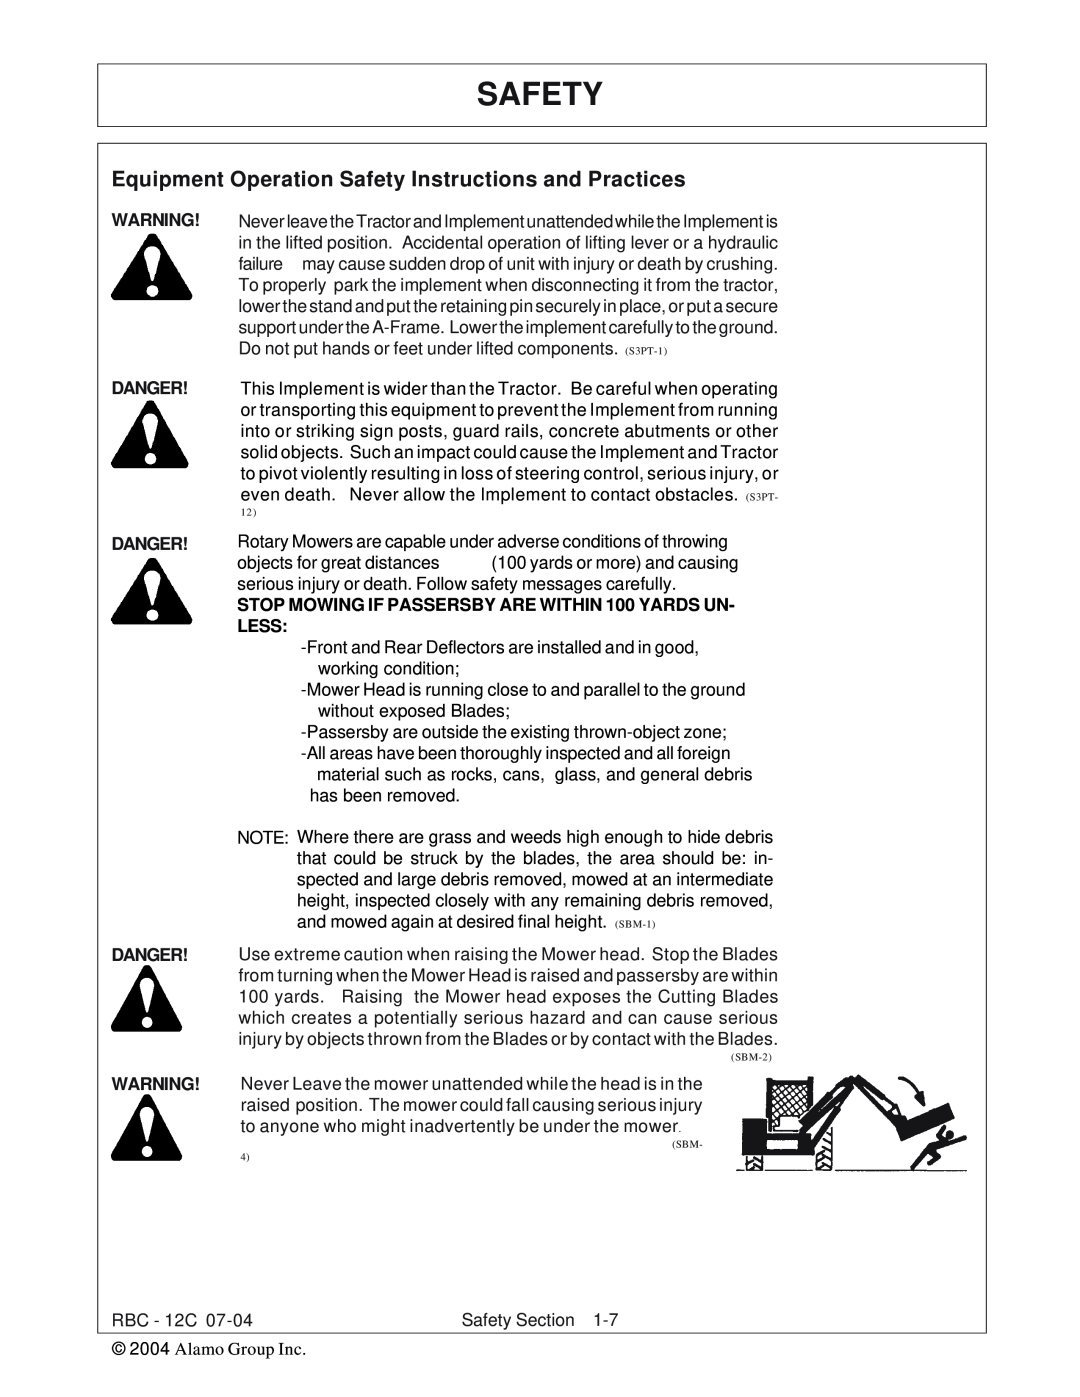 Tiger Products Co., Ltd RBF-12C manual Safety, Danger Danger Danger 